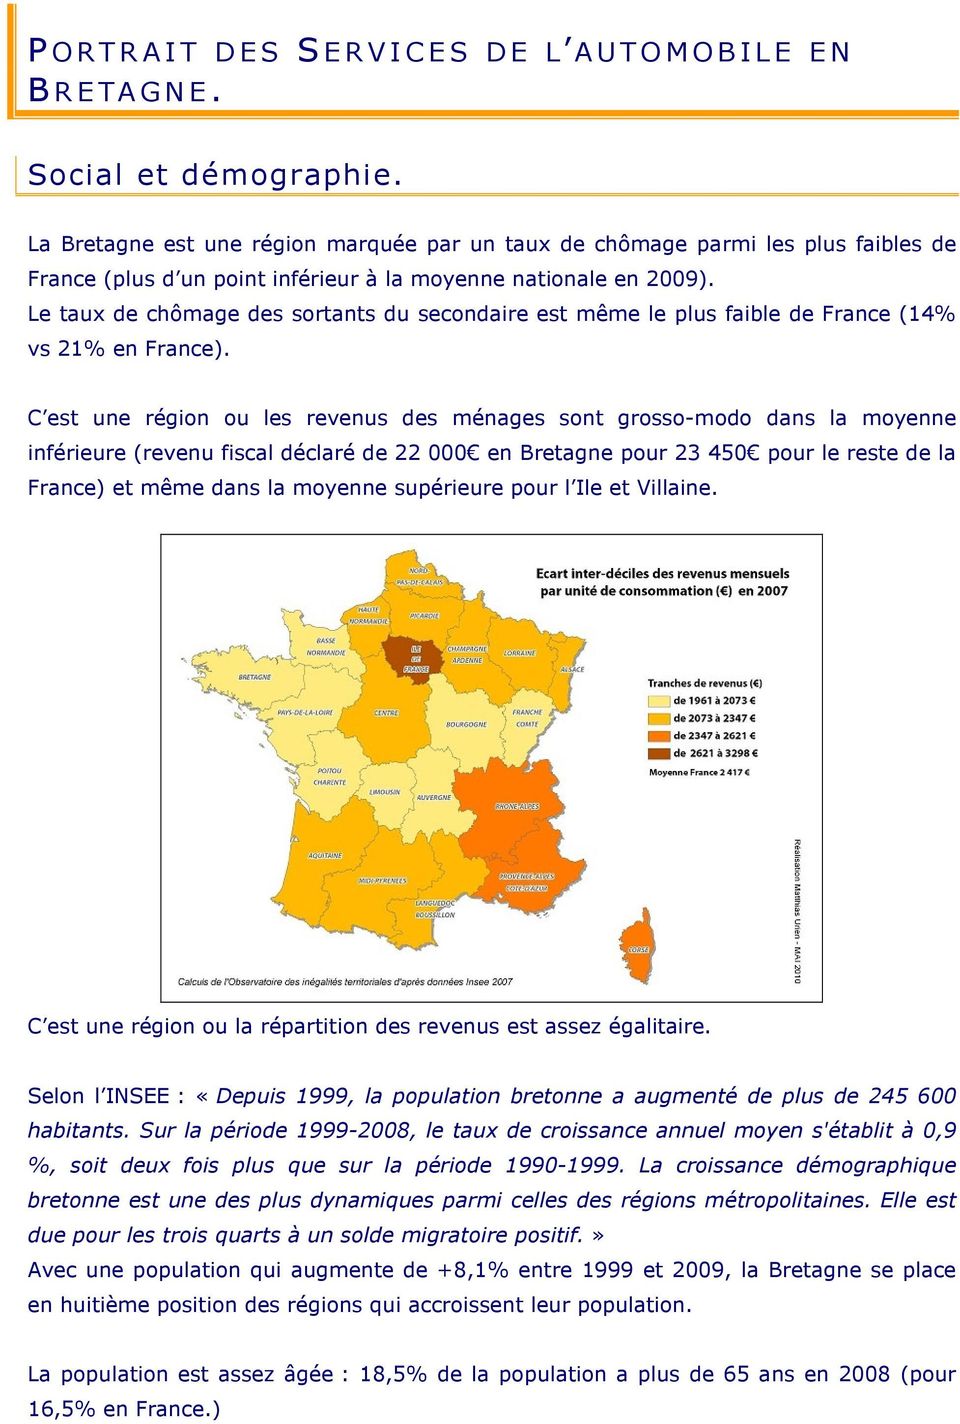 Le taux de chômage des sortants du secondaire est même le plus faible de France (14% vs 21% en France).